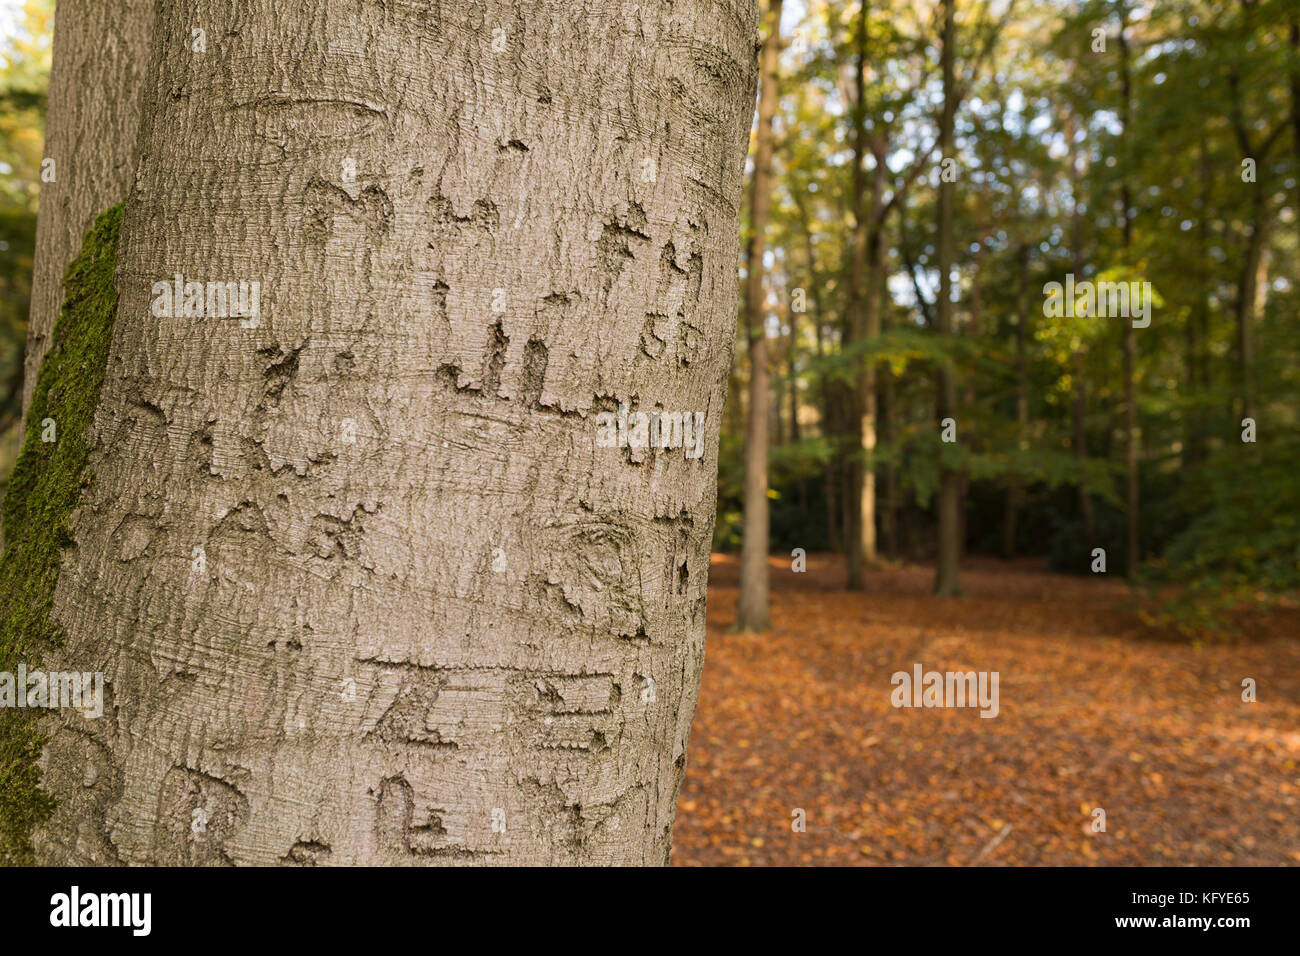 Beech tree avec des lettres et initiales gravées dans l'écorce, Allemagne Banque D'Images